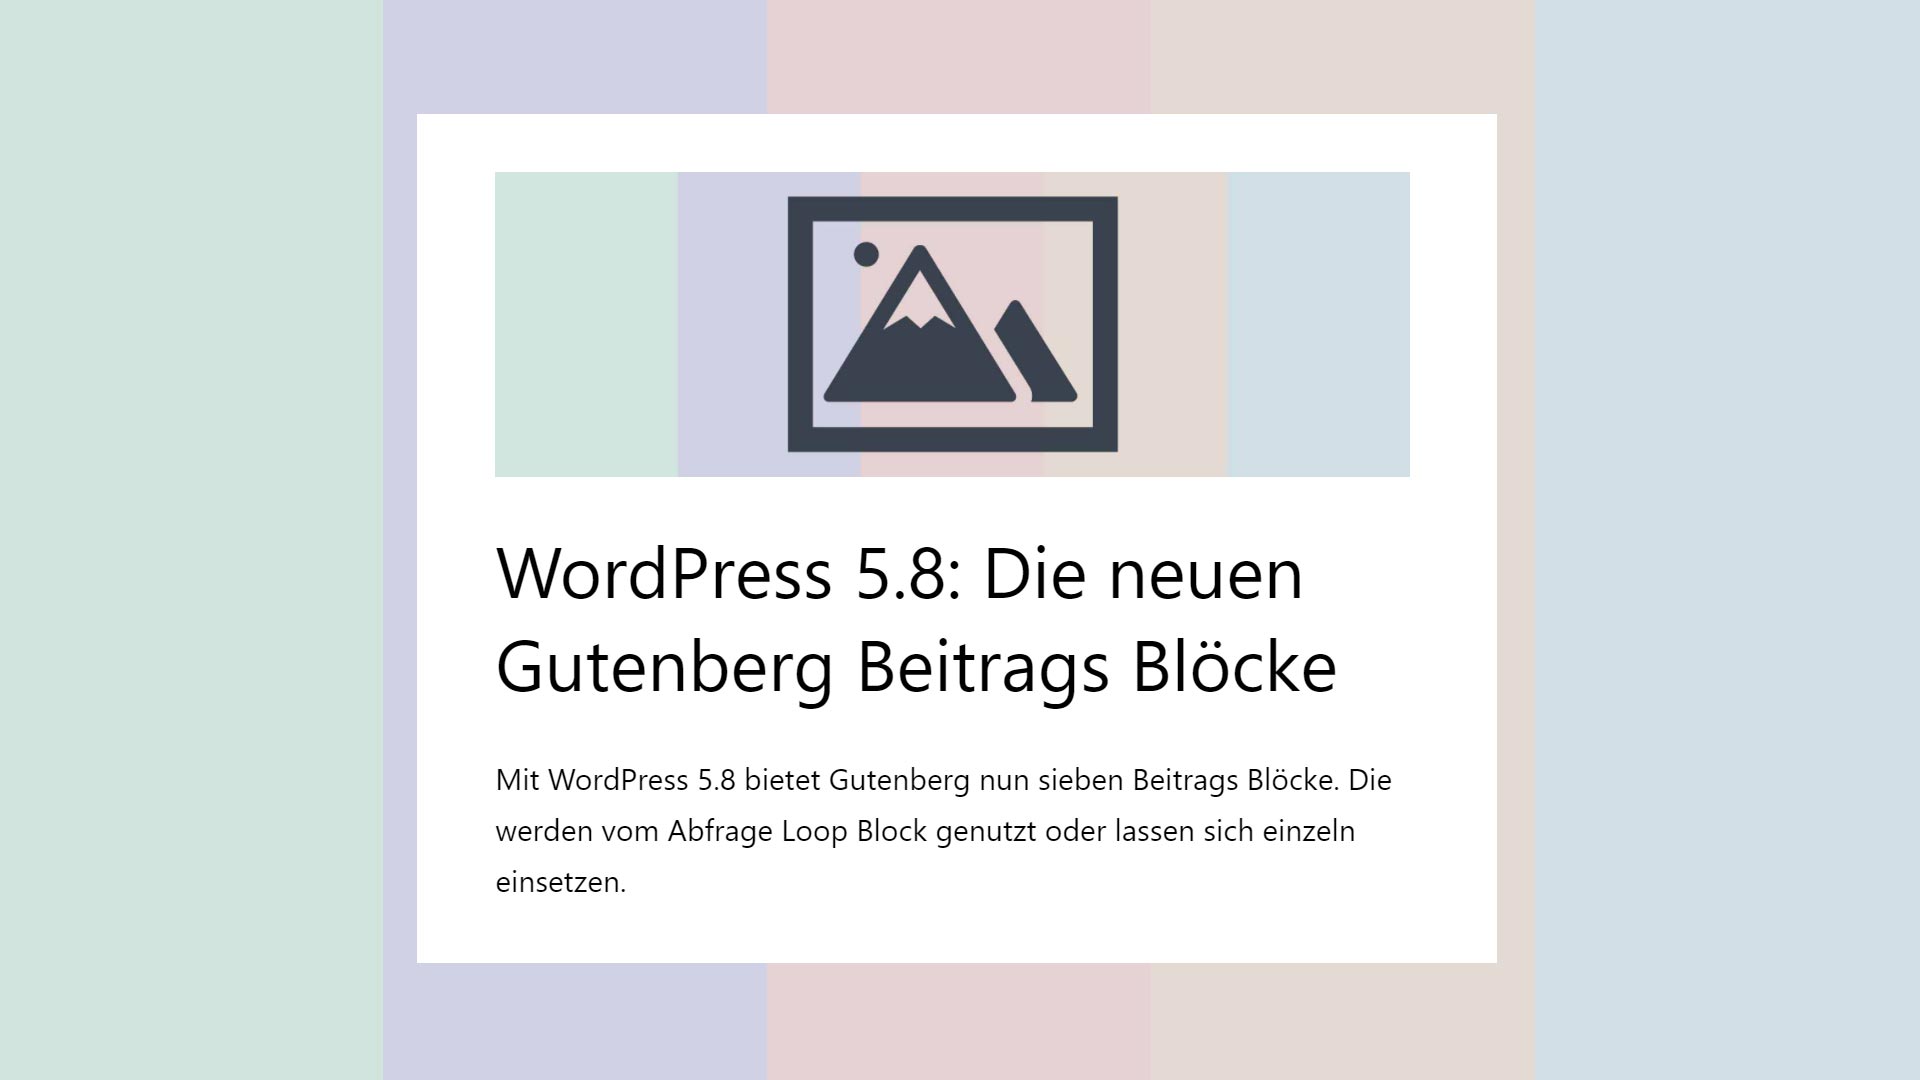 WordPress 5.8: Die neuen Gutenberg Beitrags Blöcke